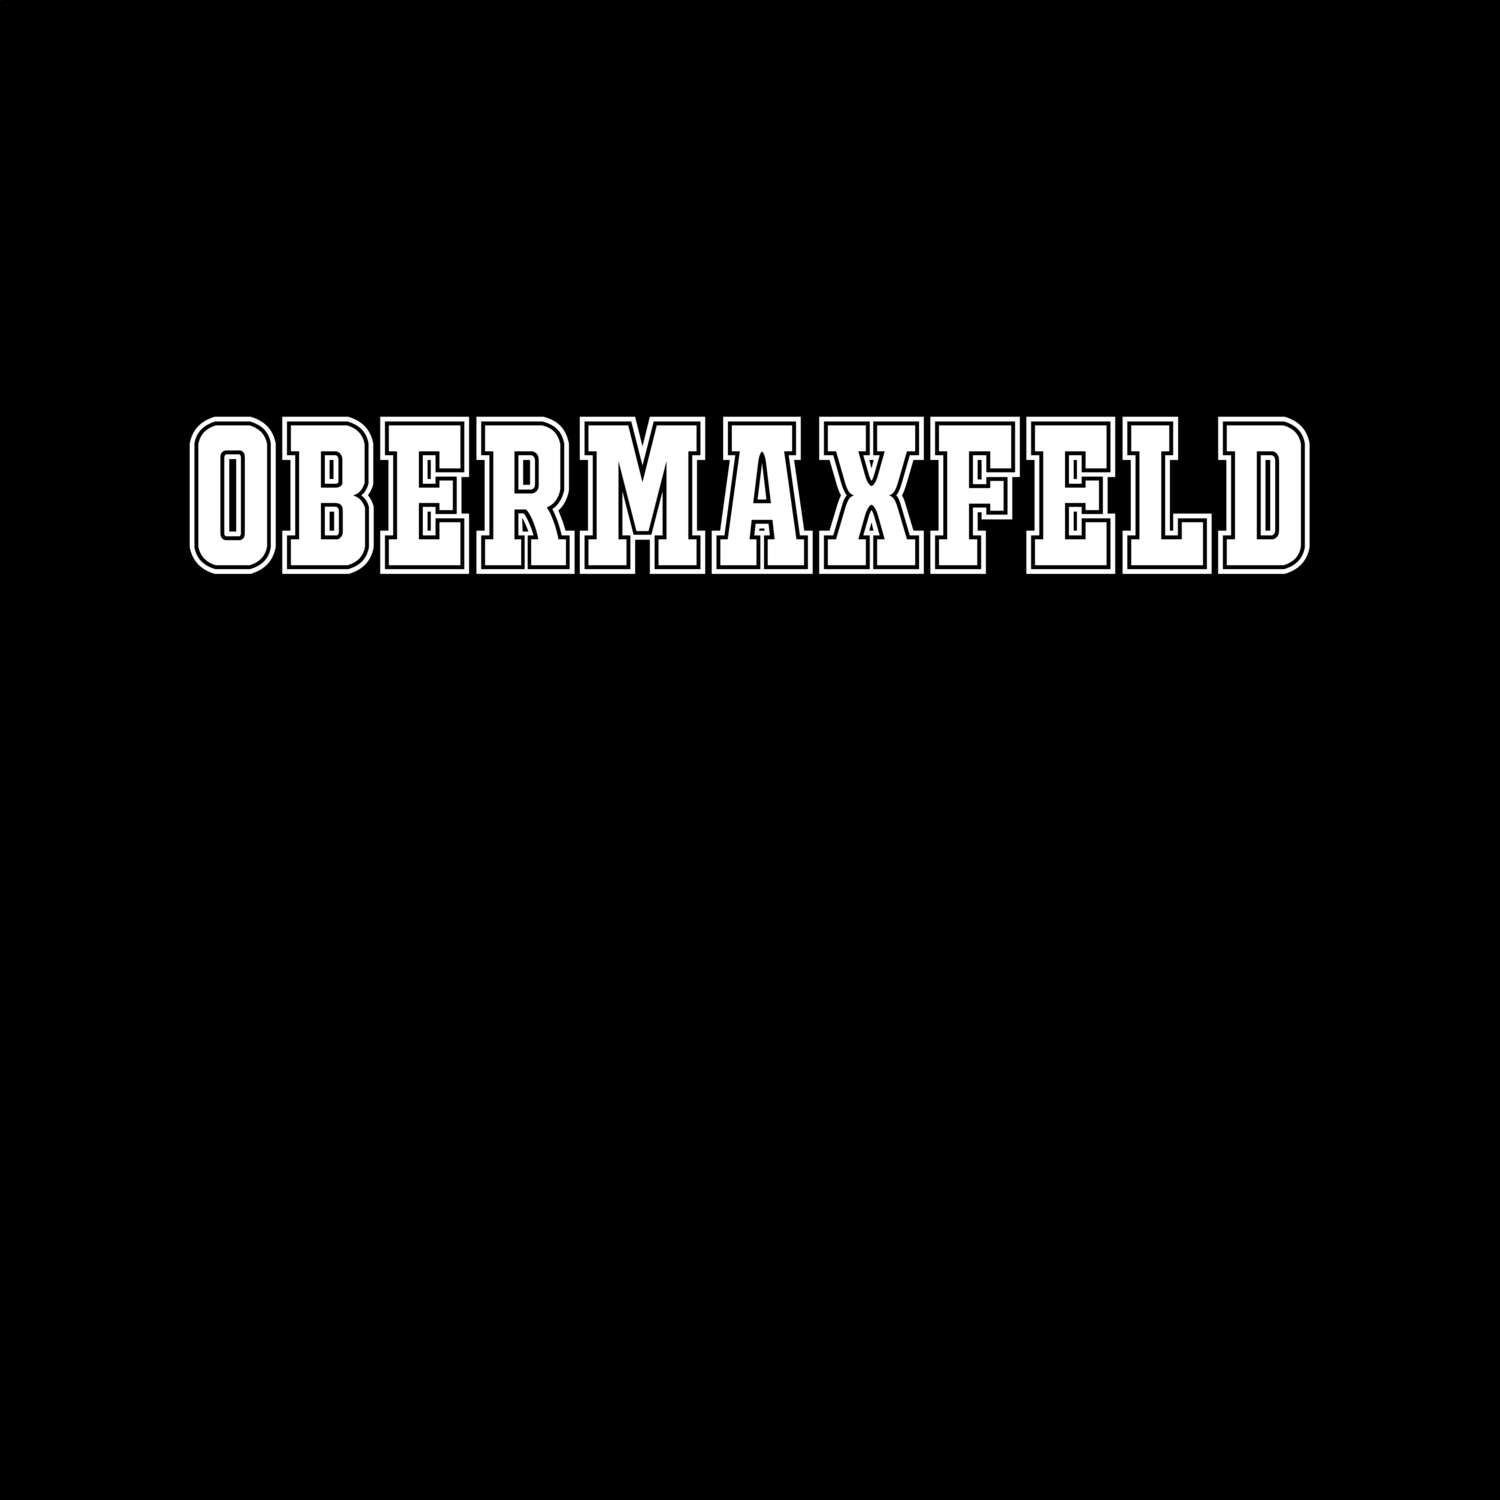 Obermaxfeld T-Shirt »Classic«